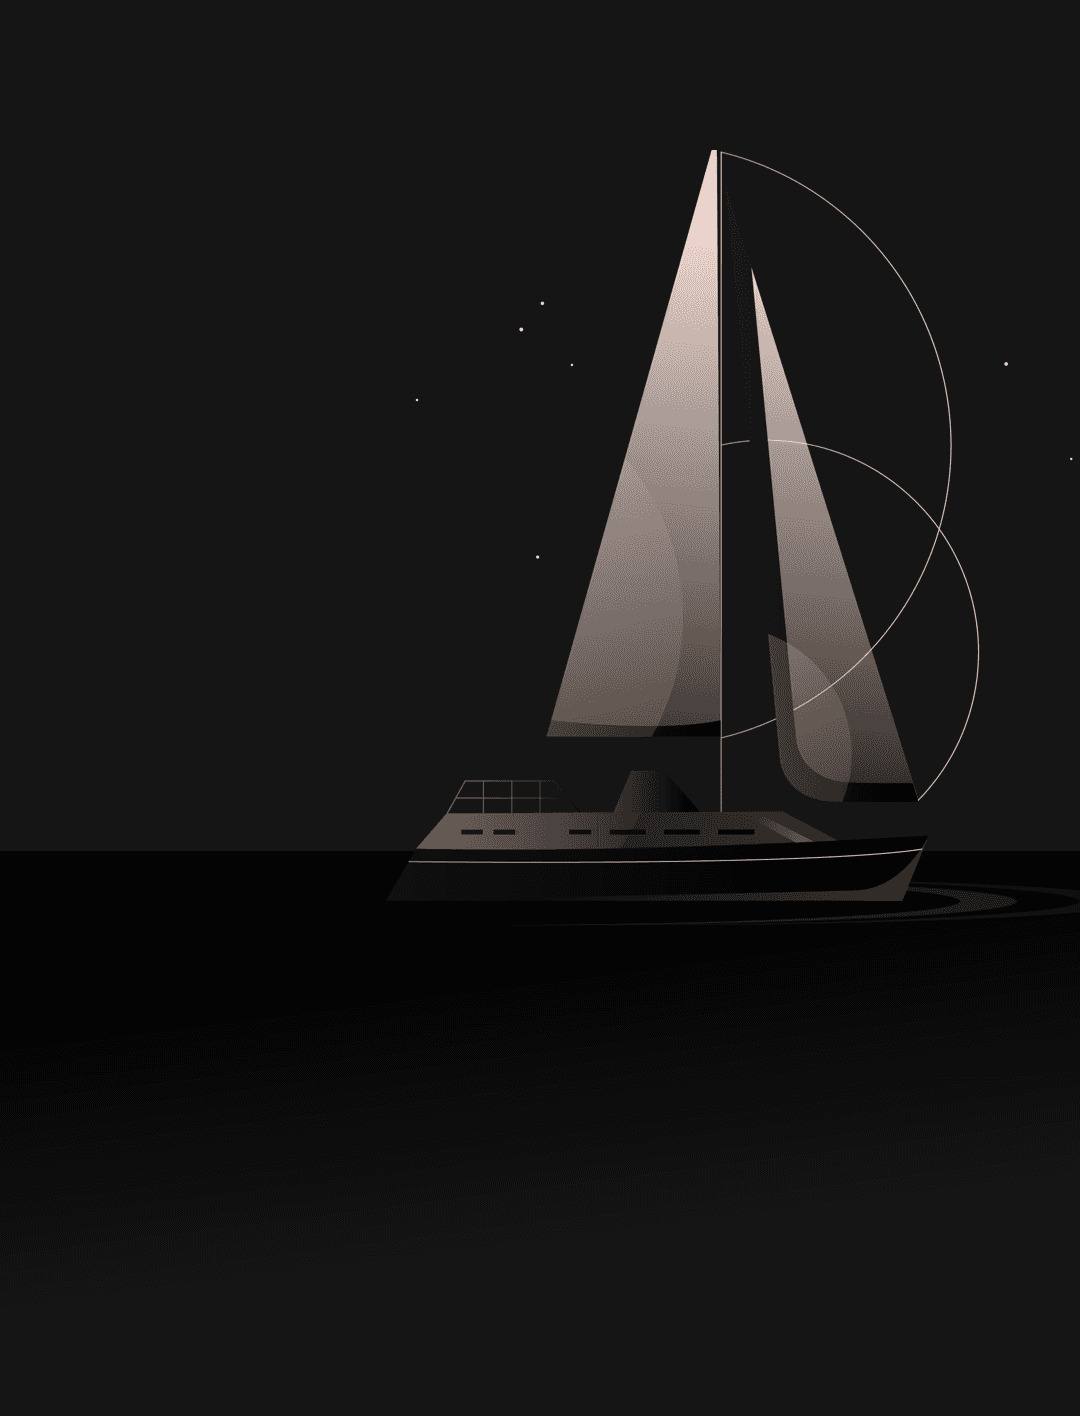 Illustration af en båd, der udtrykker ekspertise inden for digitalt design